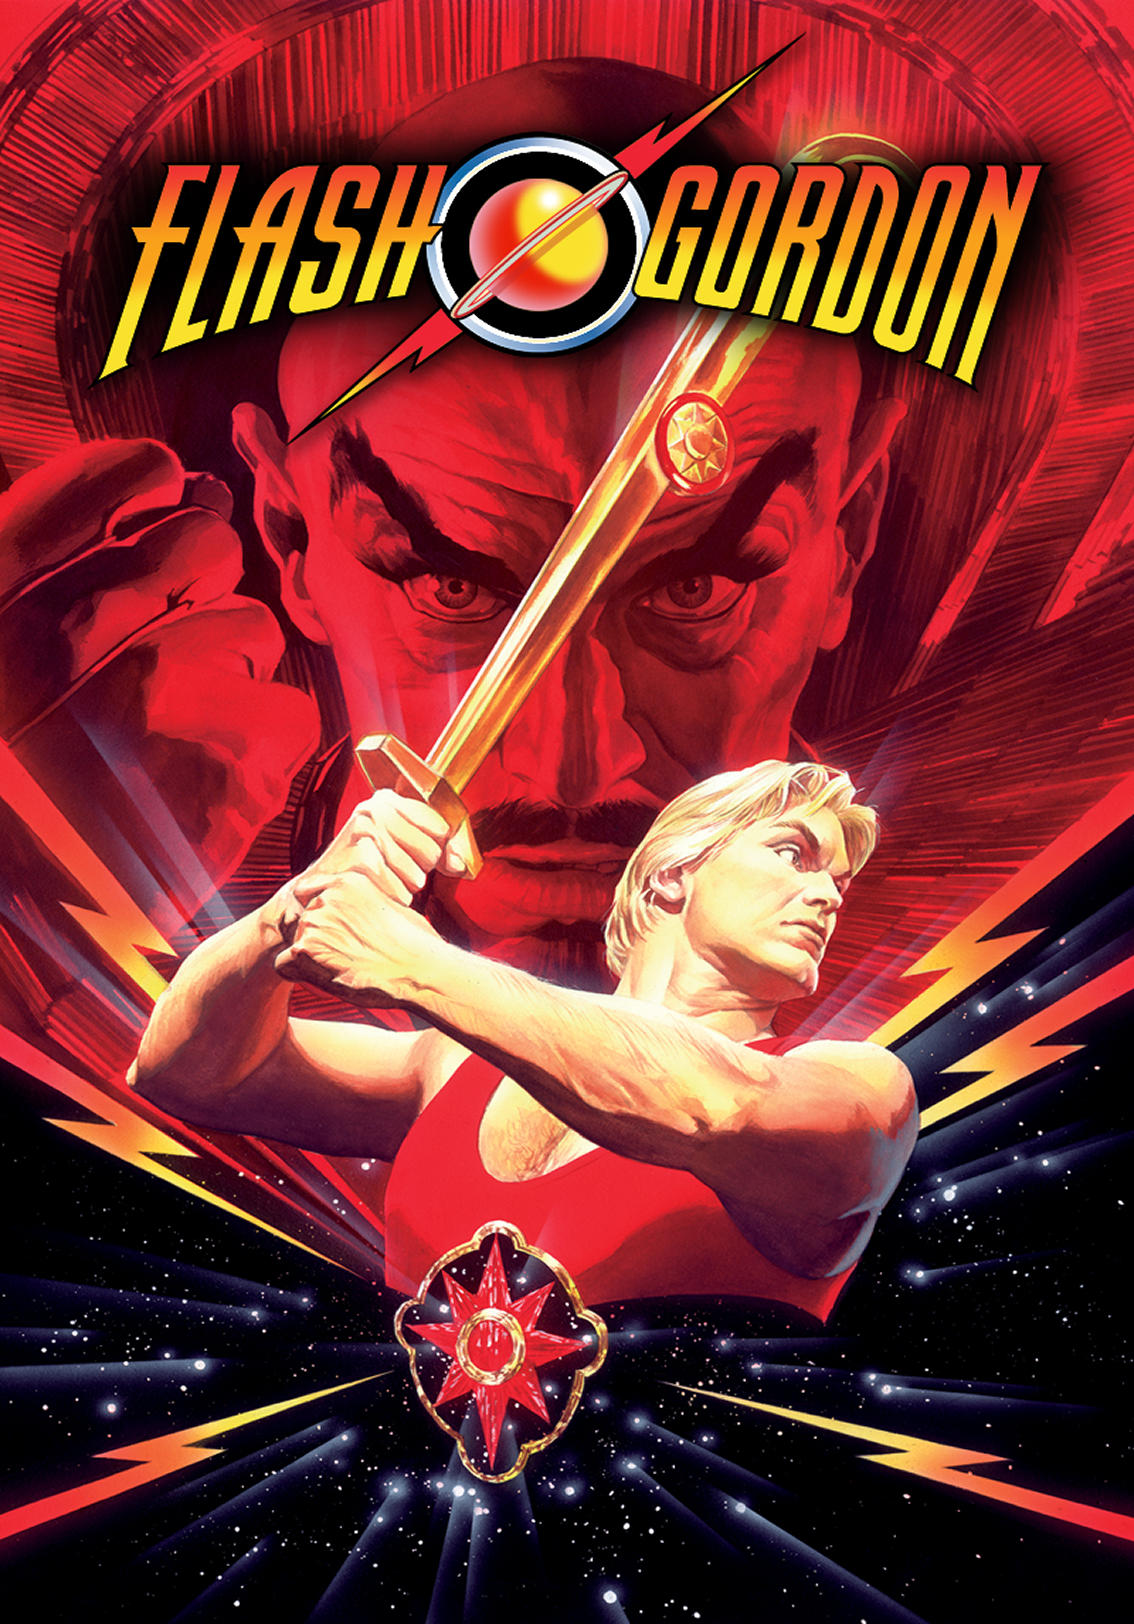 Flash Gordon (1980) Kaleidescape Movie Store